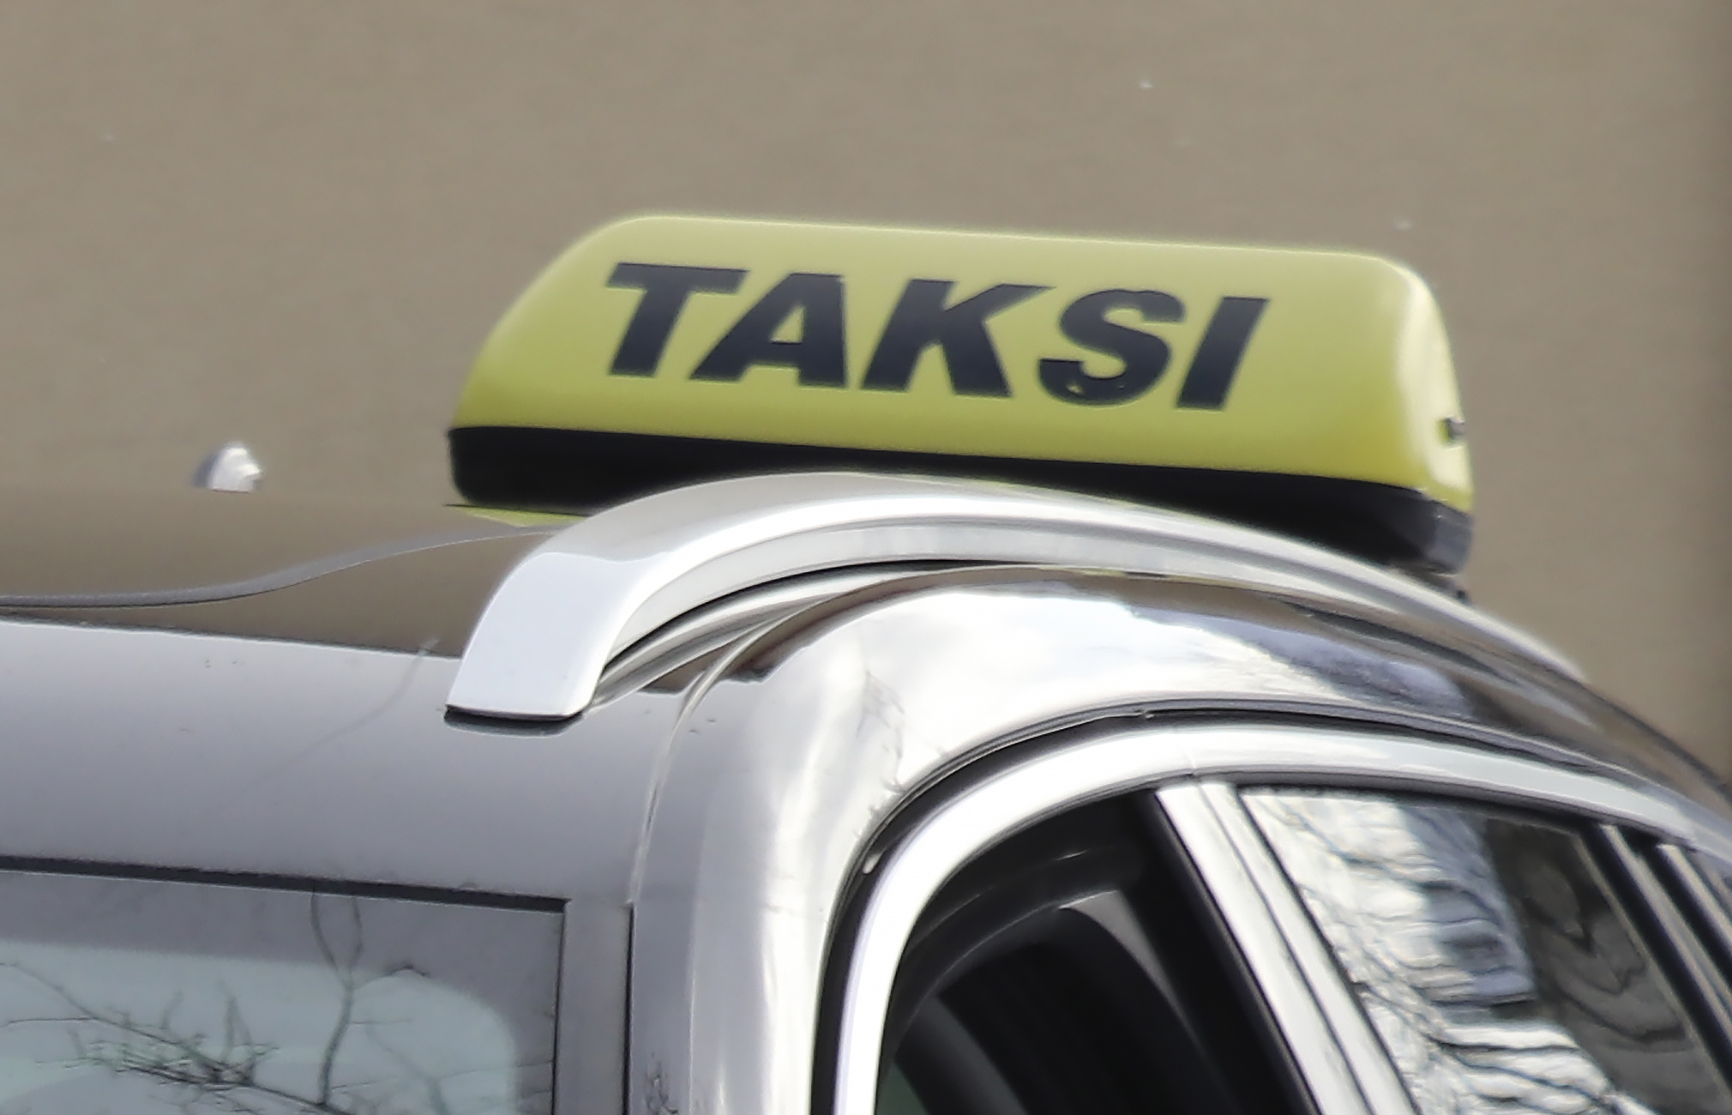 Taksilain uudistuksen kolme keskeisintä muutosta heijastelee alan arkeen tänäkin päivänä – uudistusten tuomaa säröä taksien luotettavuuteen koitetaan saada palautettua